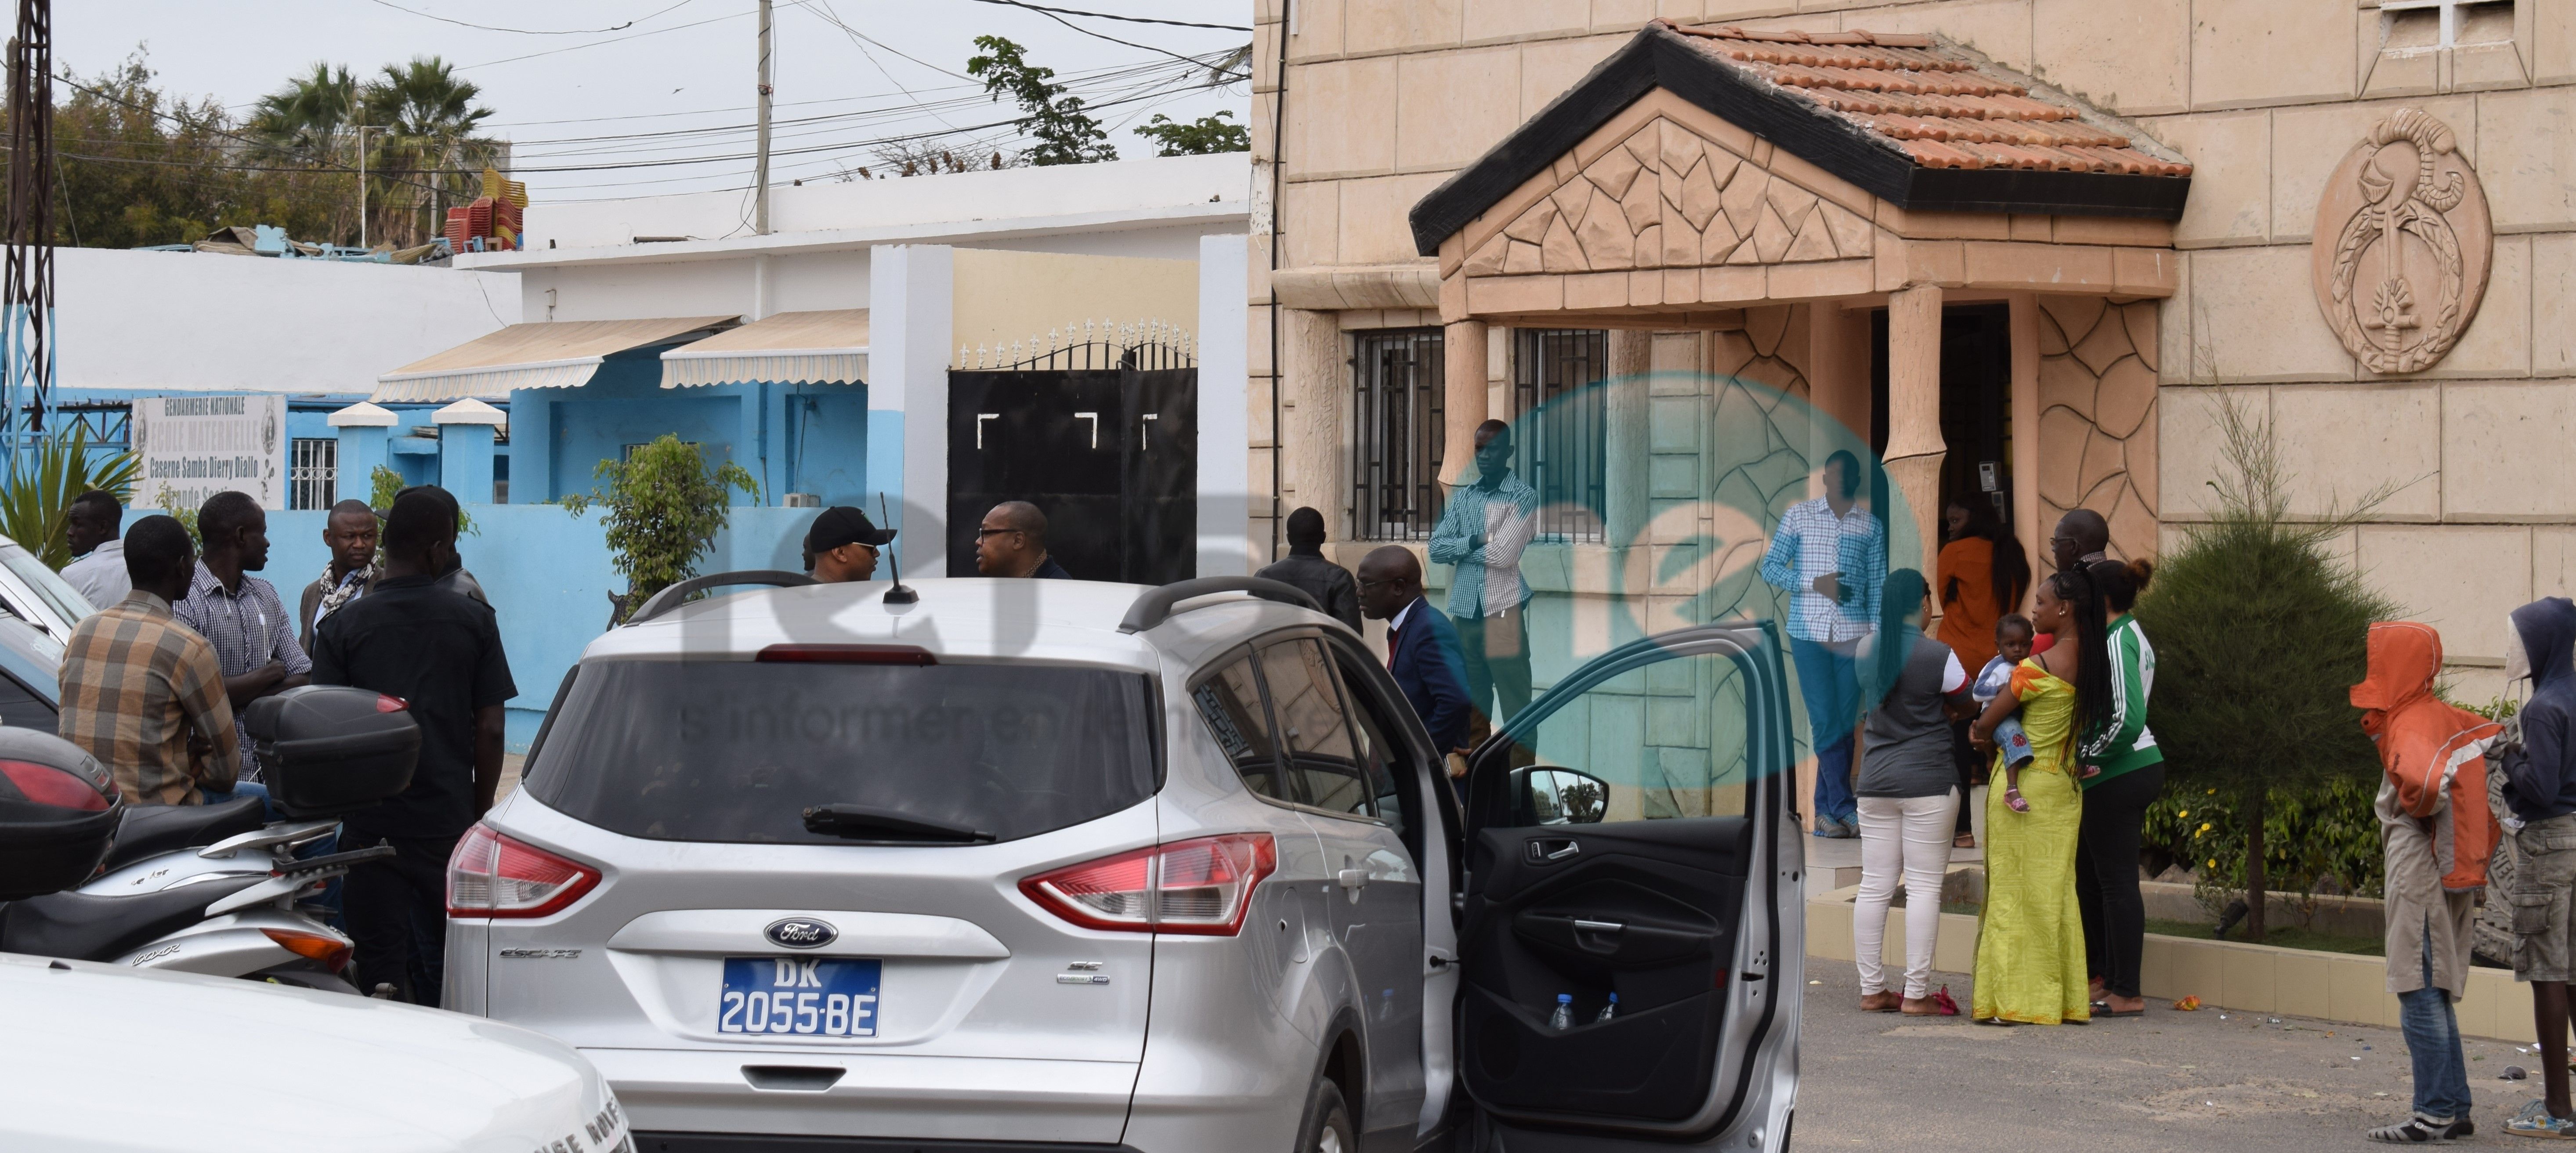 Les images de El Hadji Ousseynou Diouf à sa sortie d'audition de la Section de recherches de la gendarmerie